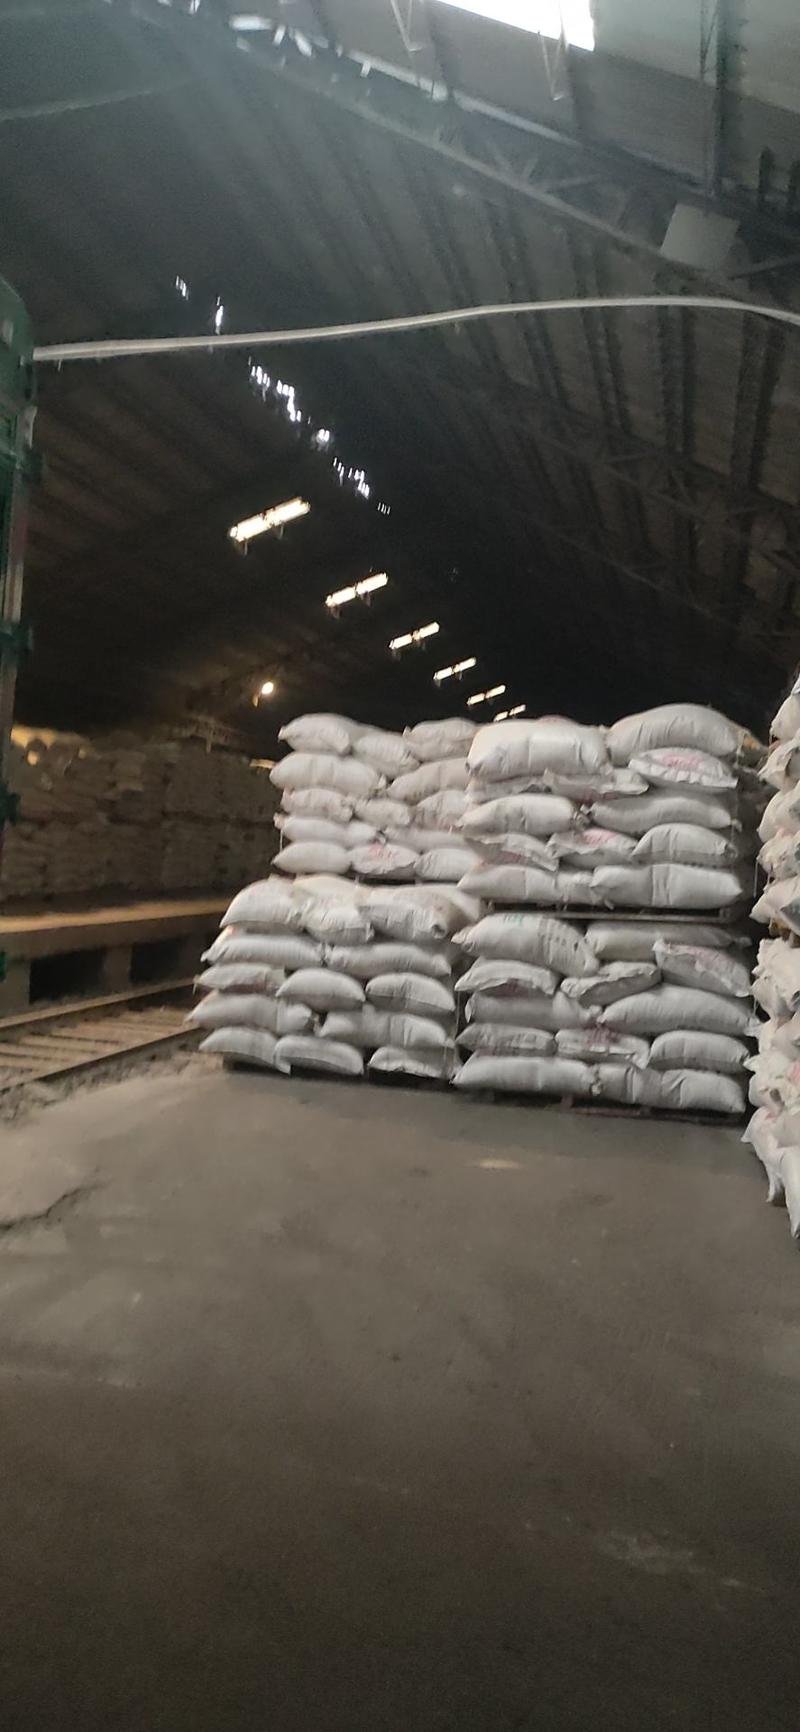 稻壳谷壳桂林市厂家直销新鲜除尘谷壳日产80吨。